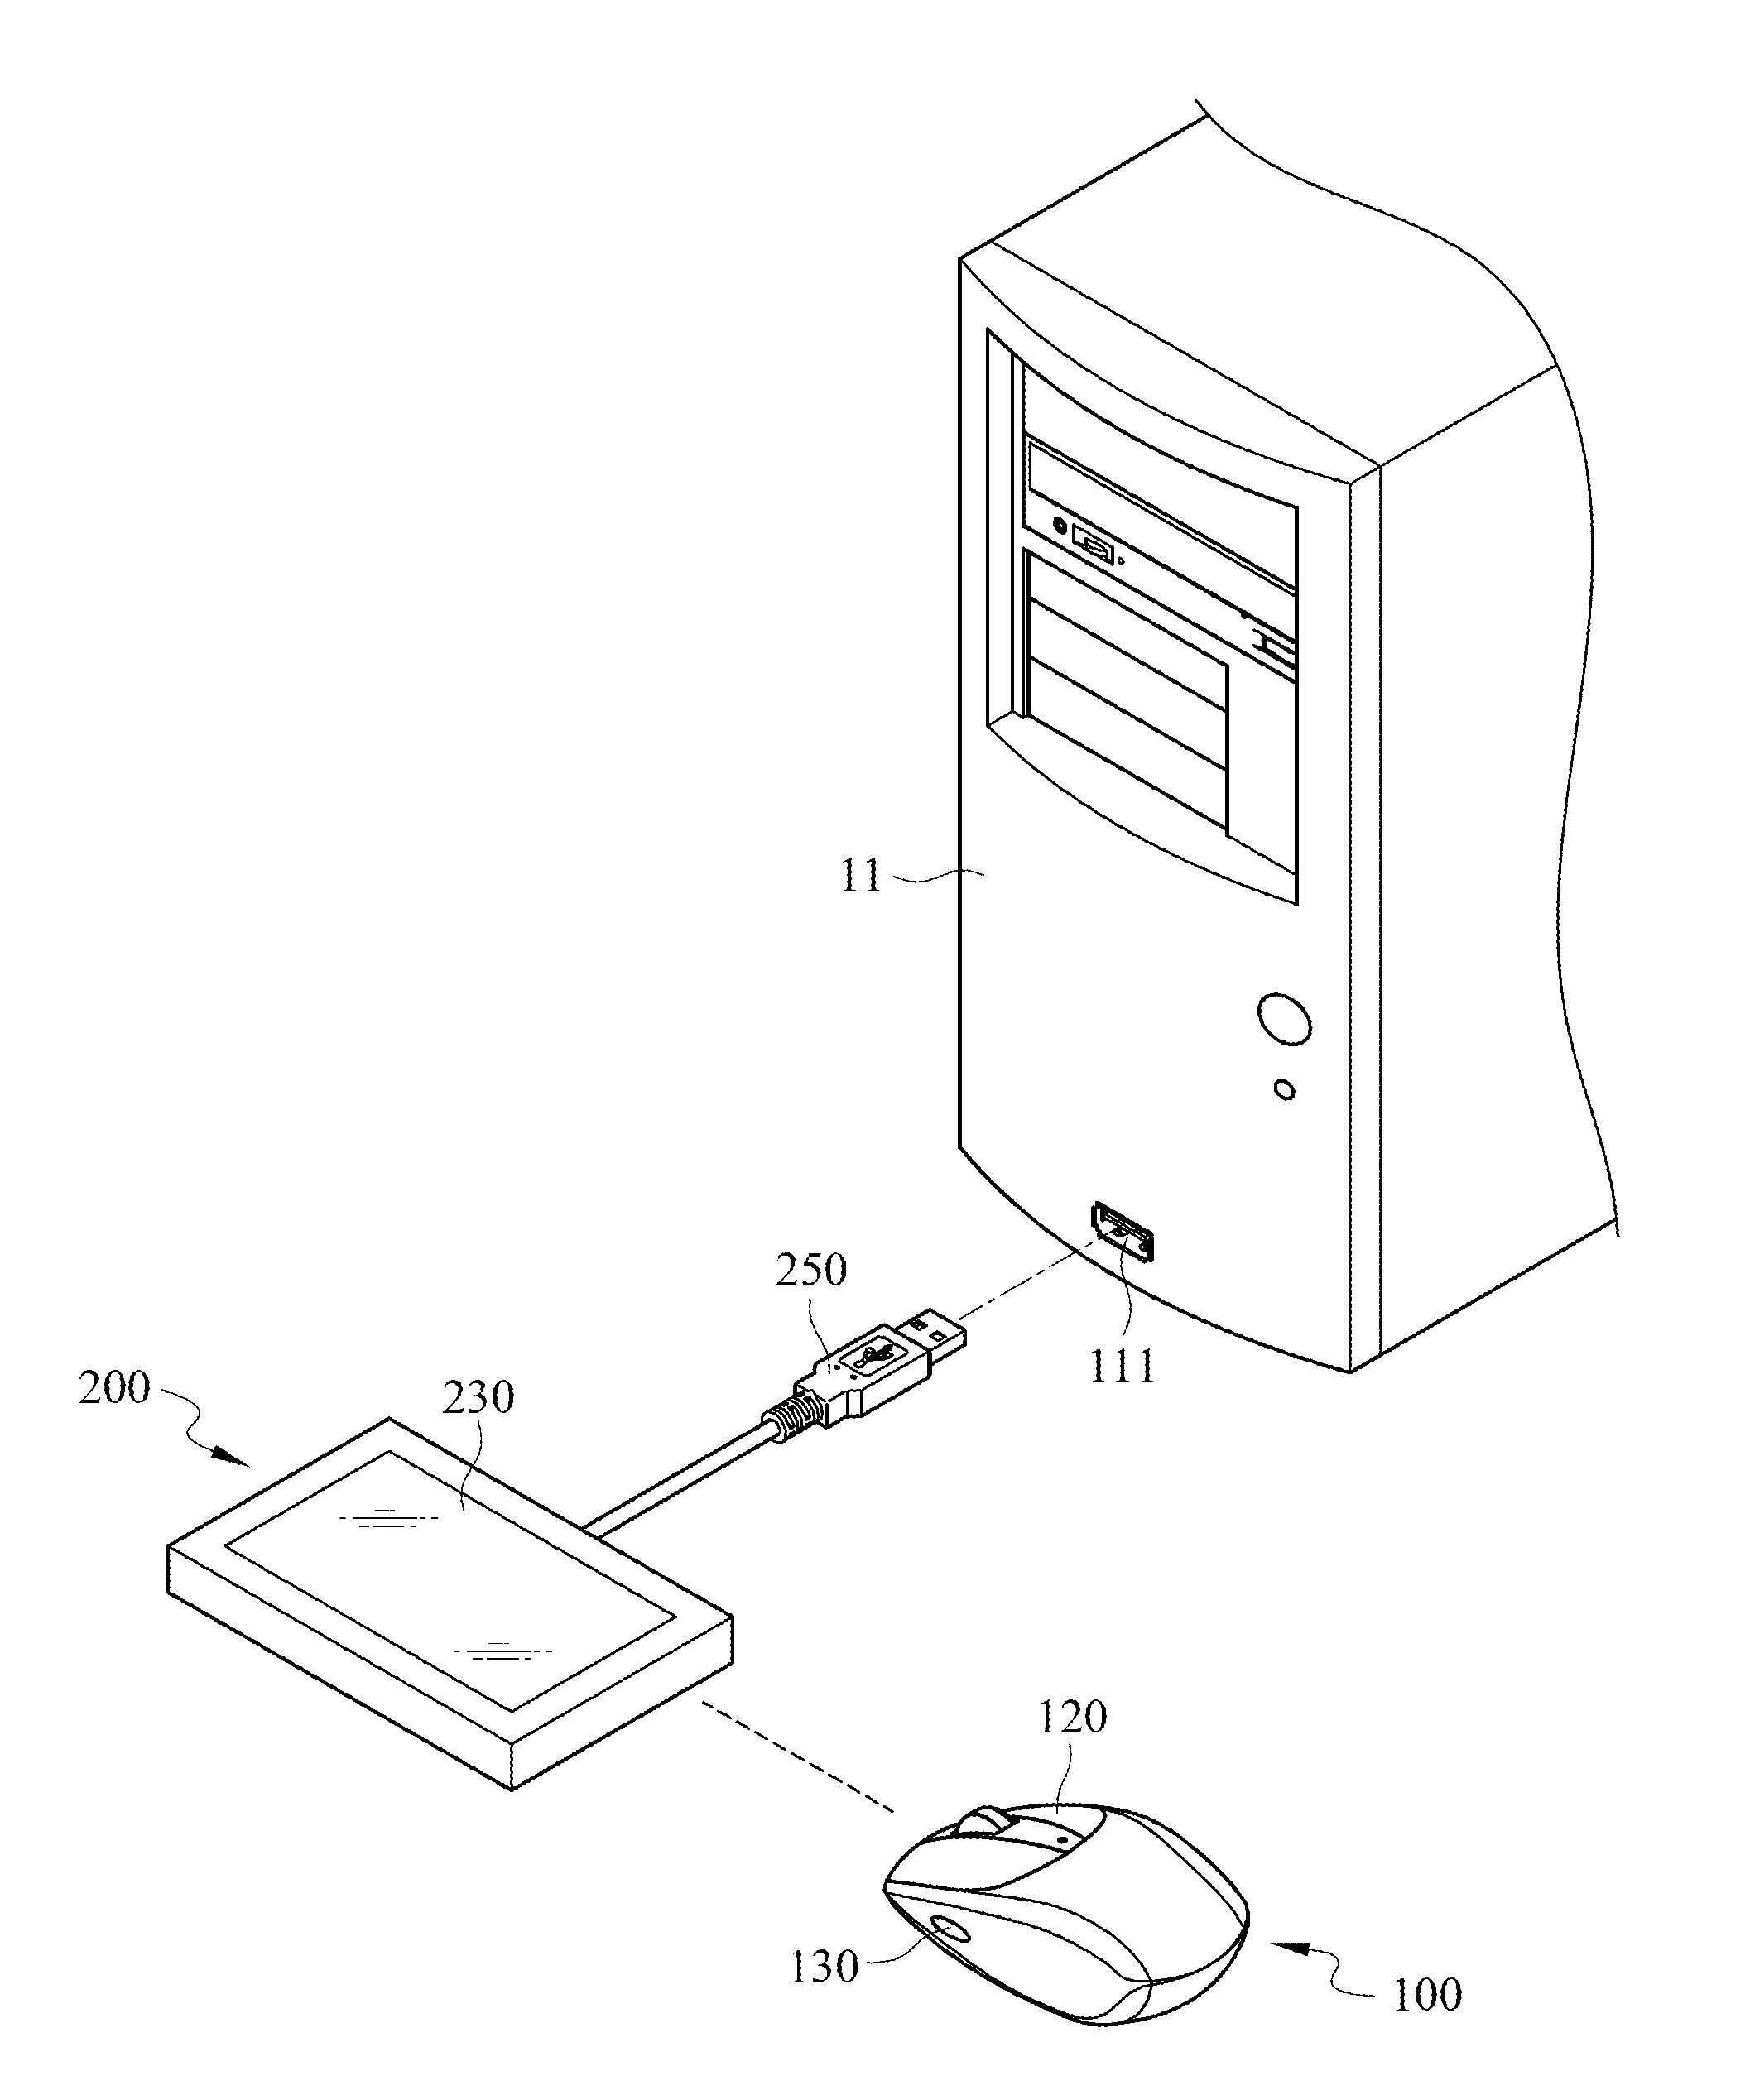 Wireless input device